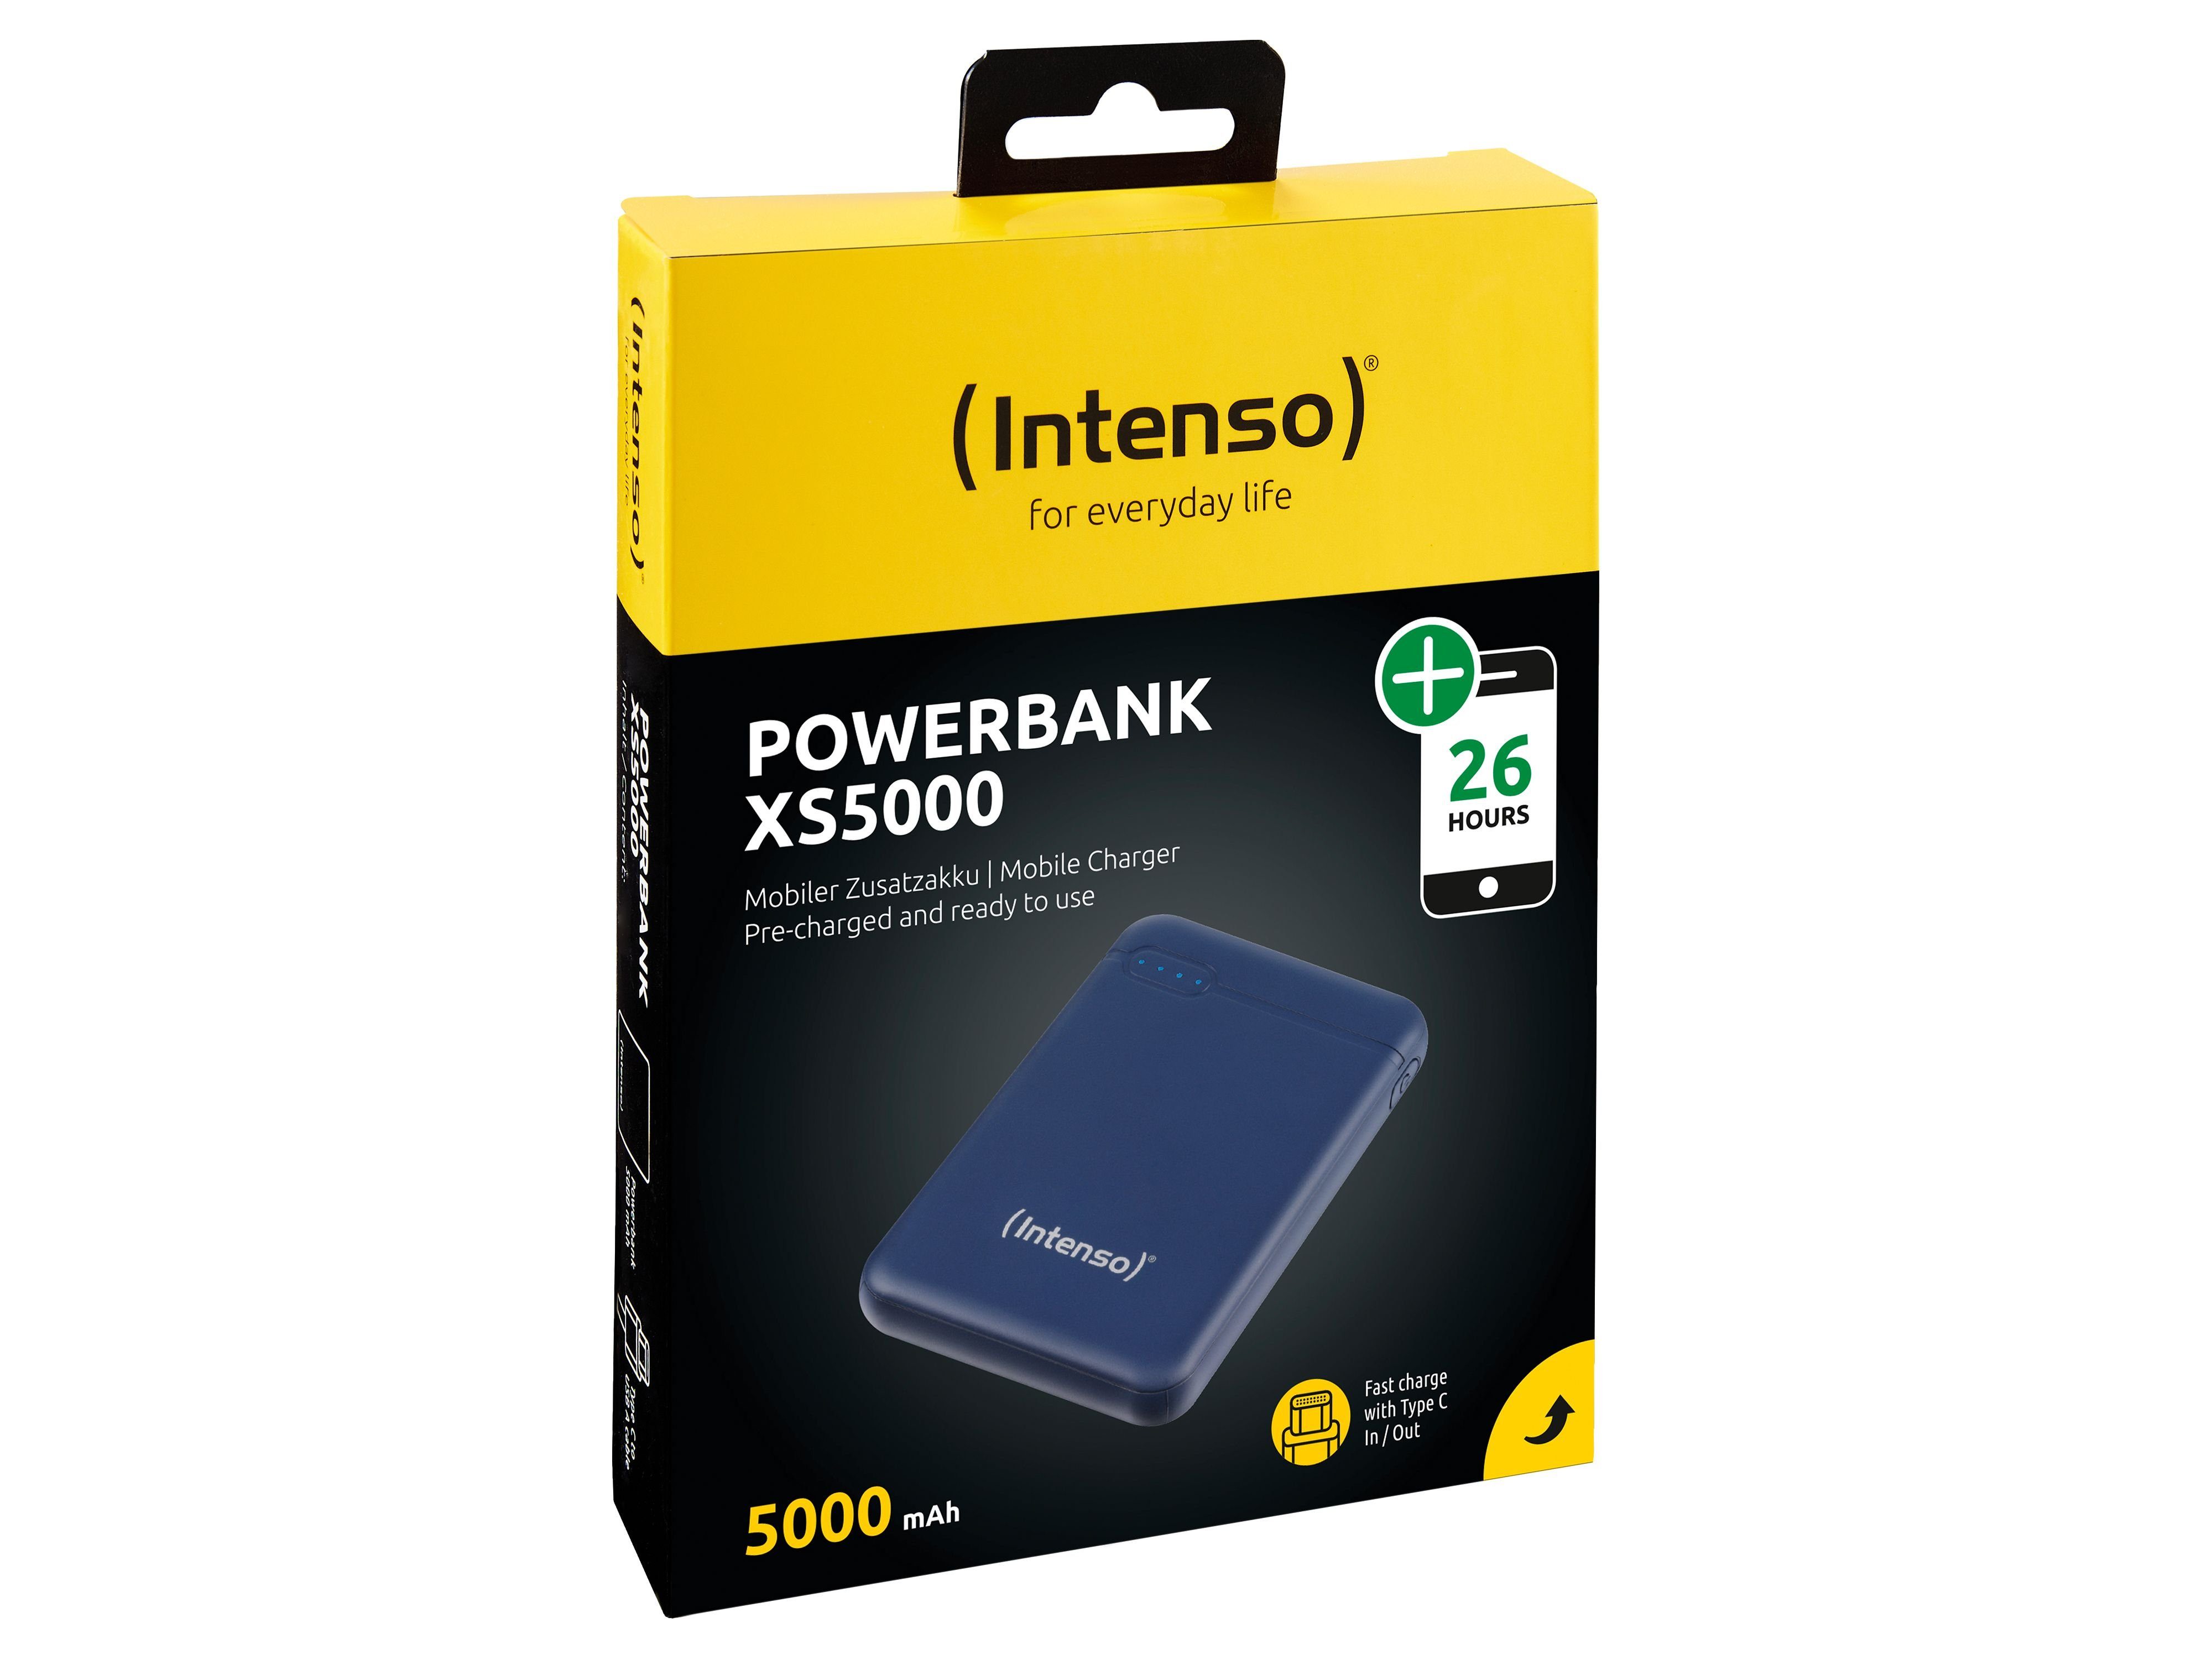 USB Powerbank Intenso INTENSO 5000, Powerbank 7313525 5.000 mAh XS